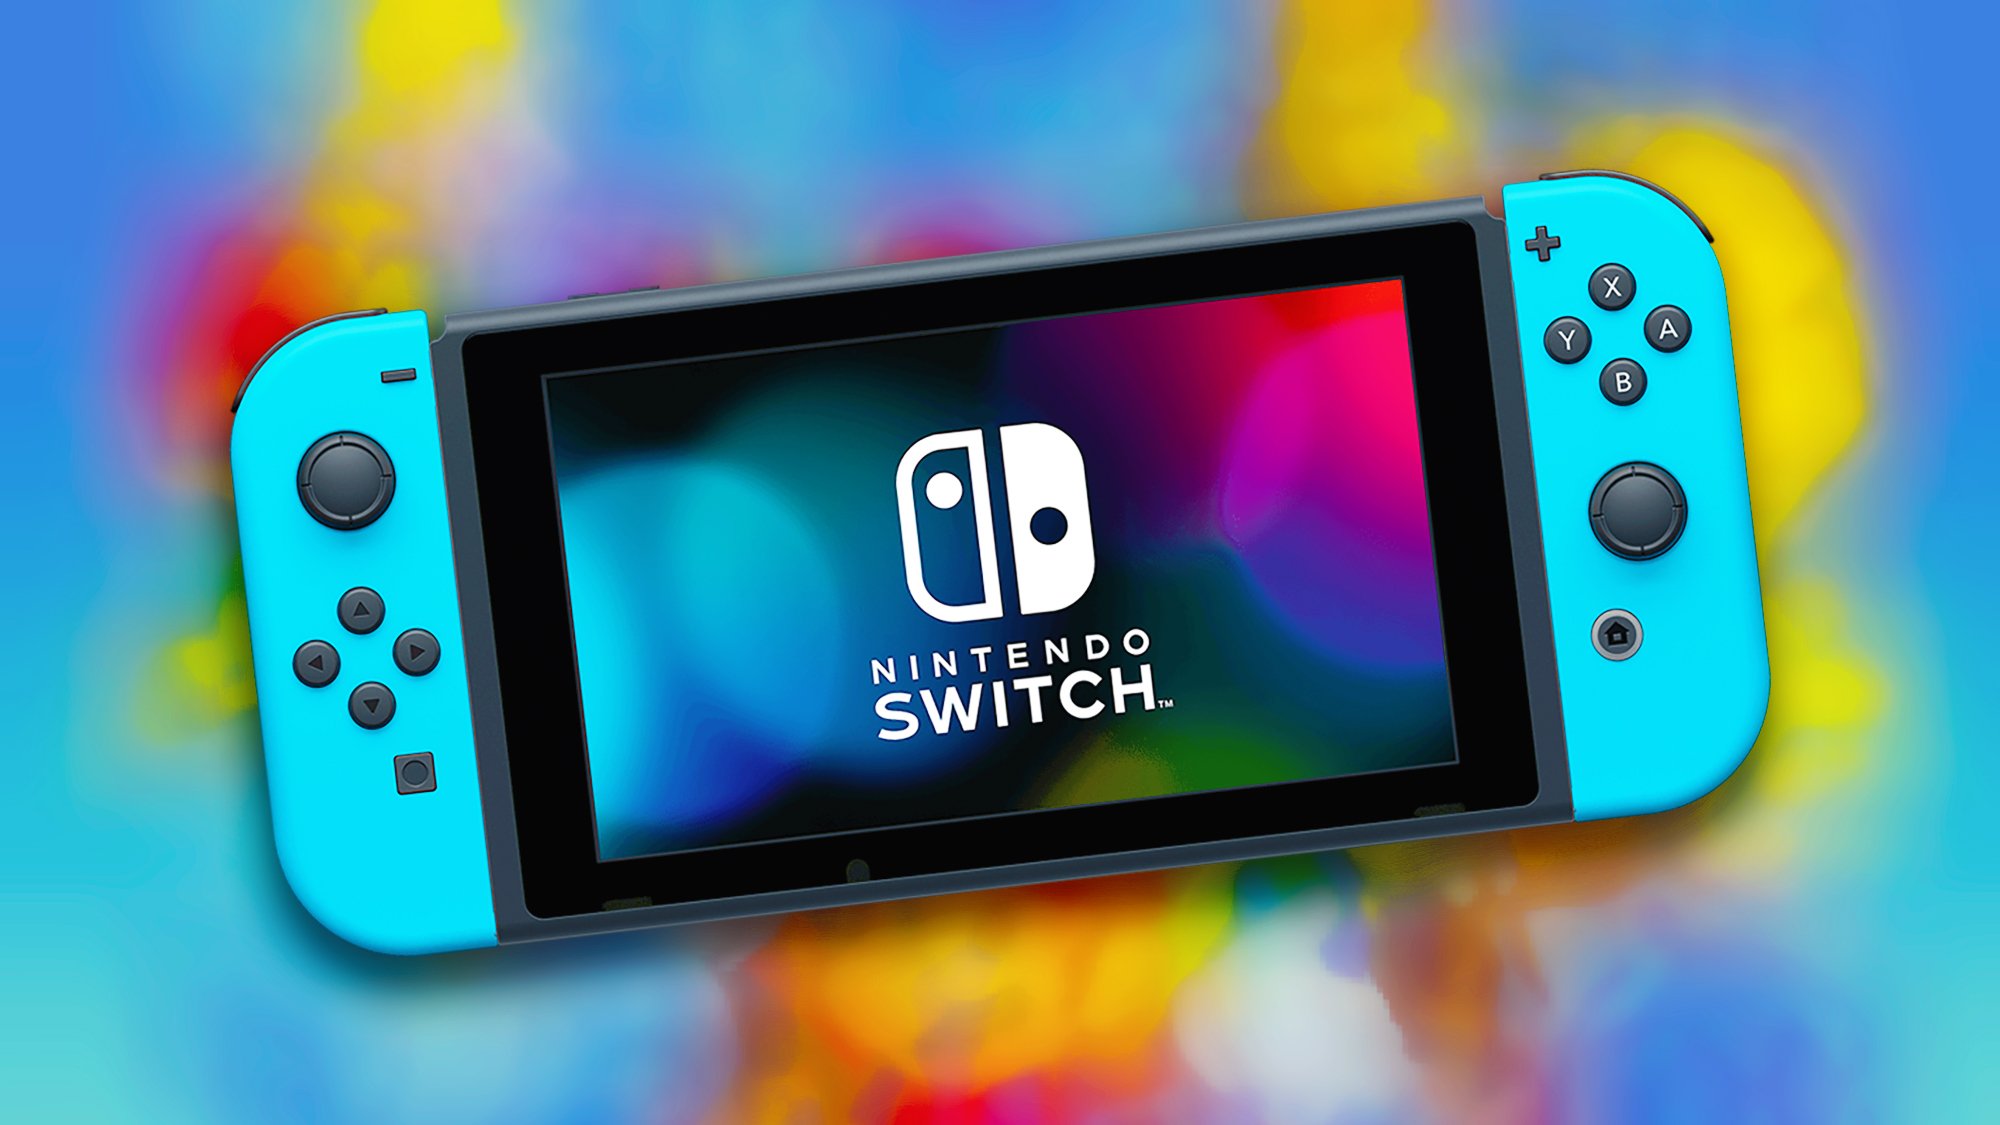 Nintendo Switch : un nouveau jeu gratuit très attendu pour les abonnés, une merveille